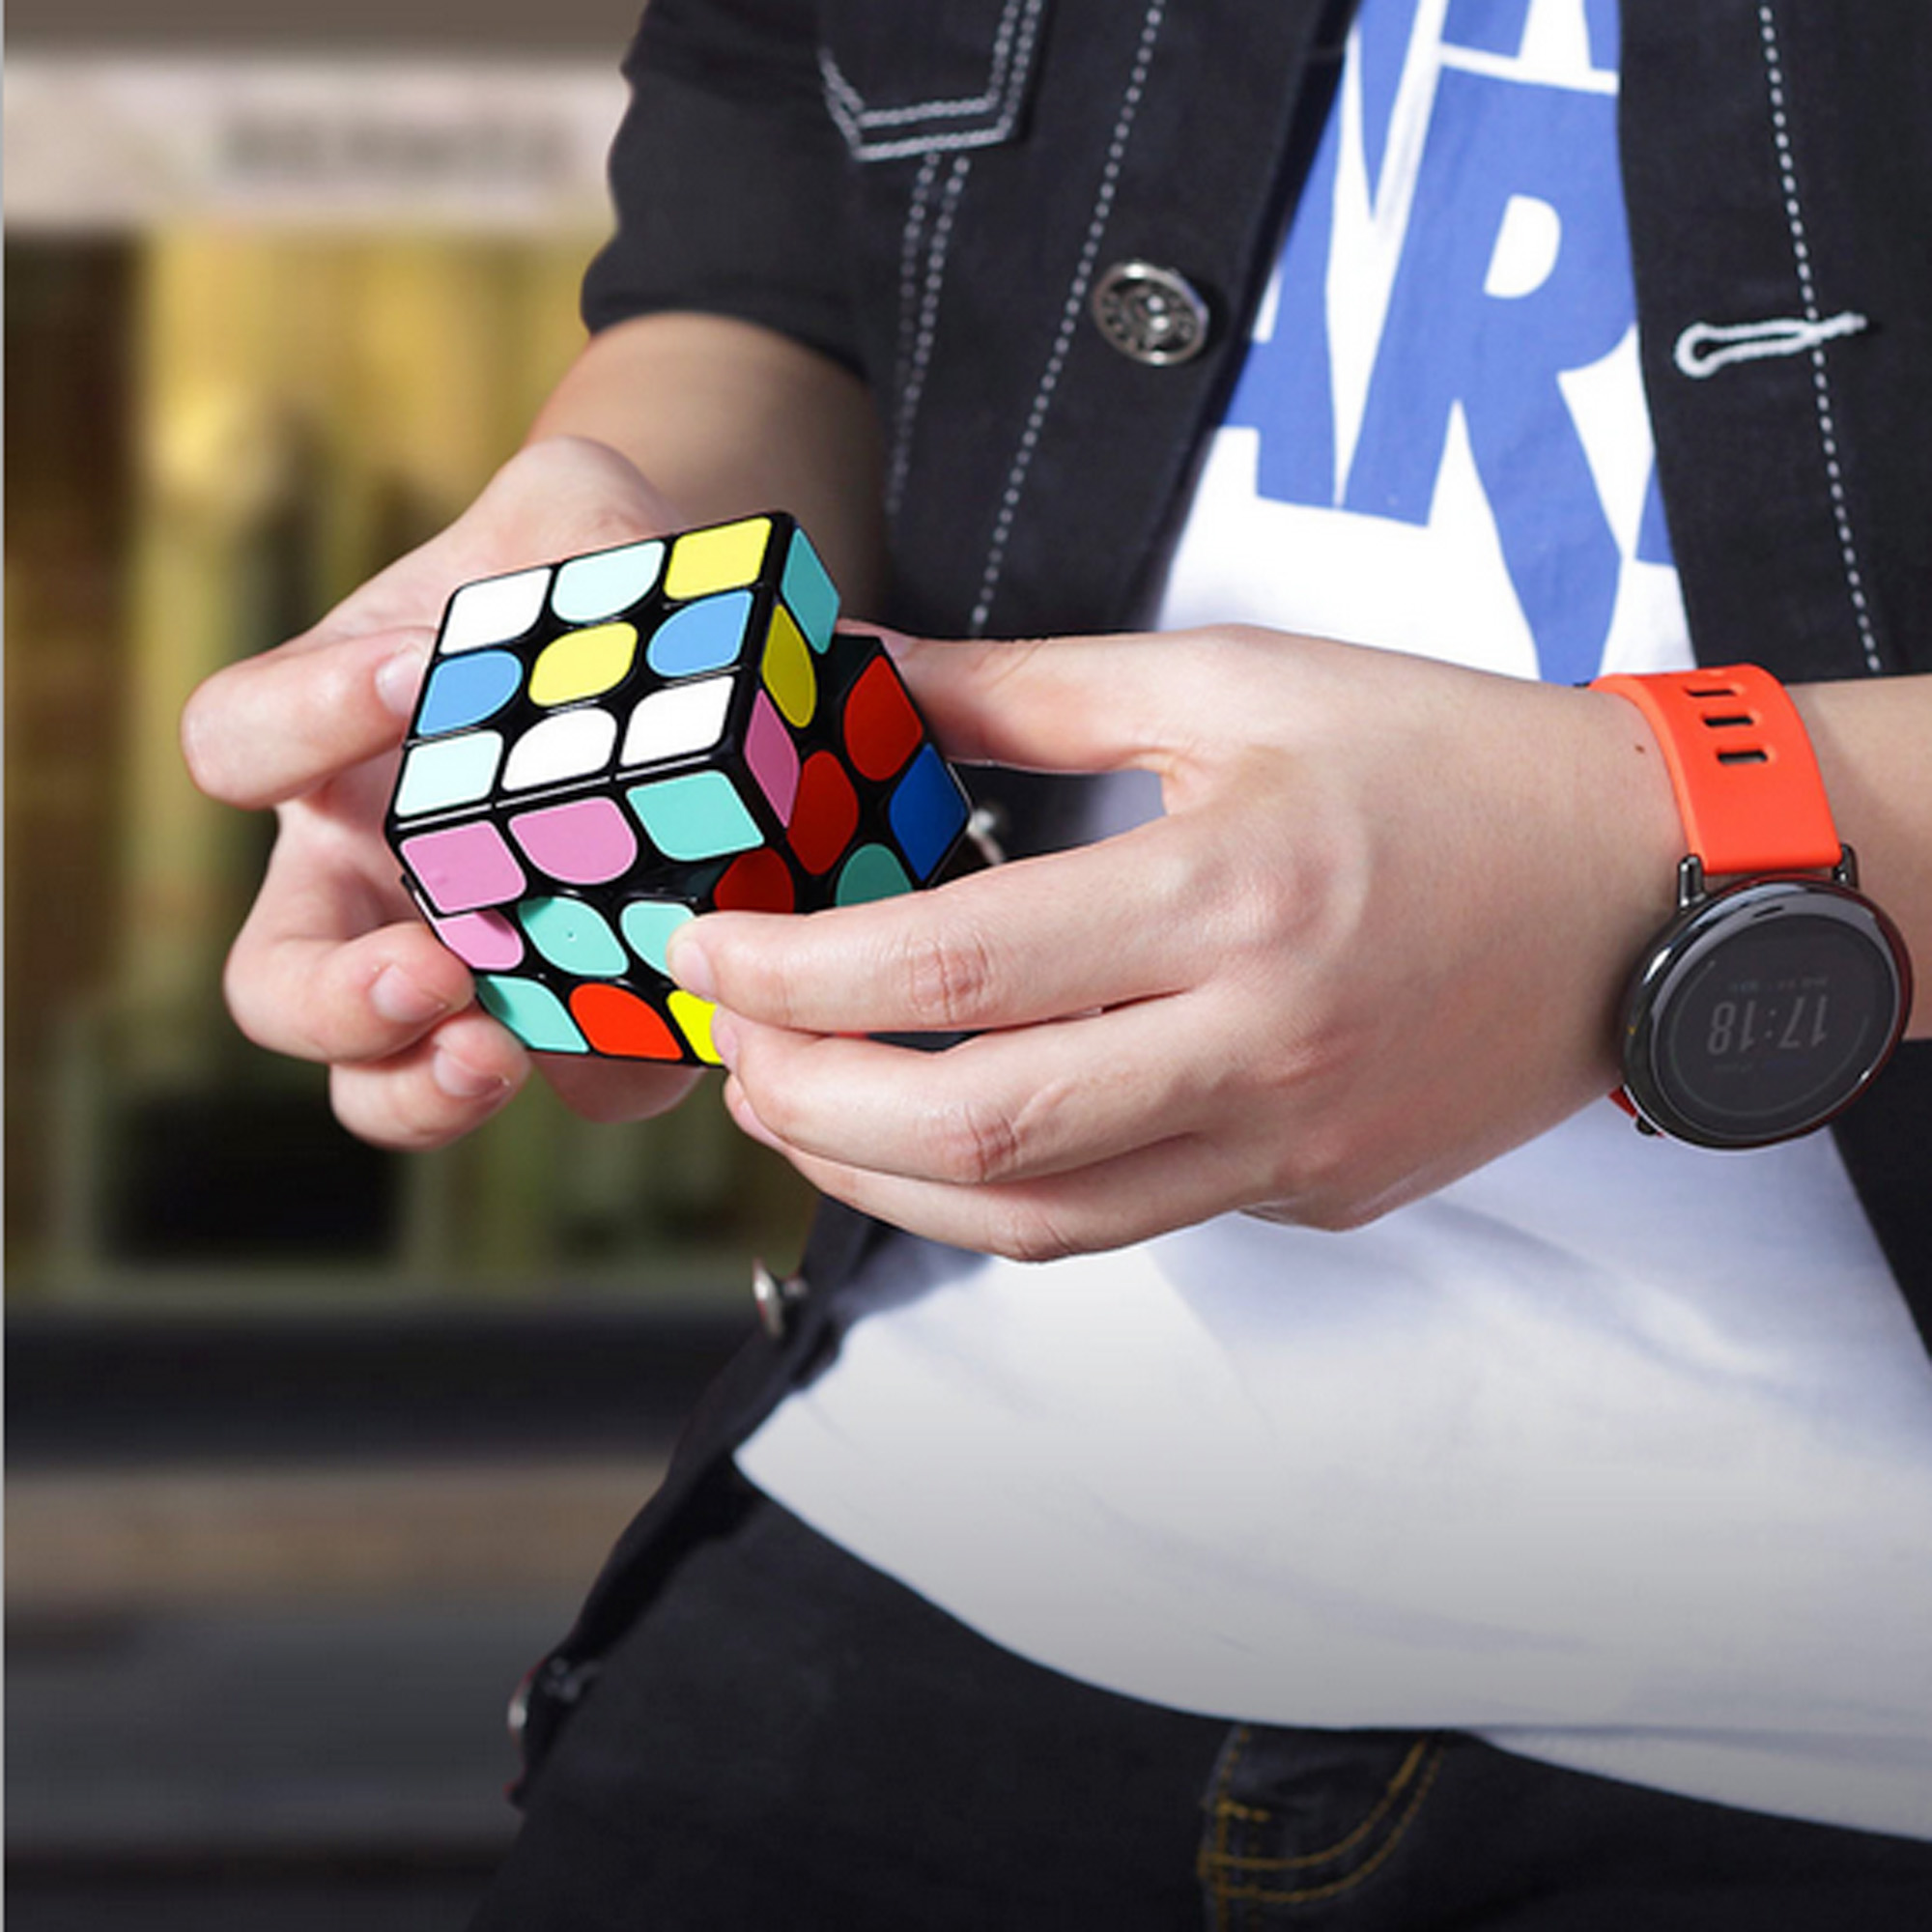 GiiKER Speed Cube, the smart cube for GiiKER Speed Cube is a Rubik